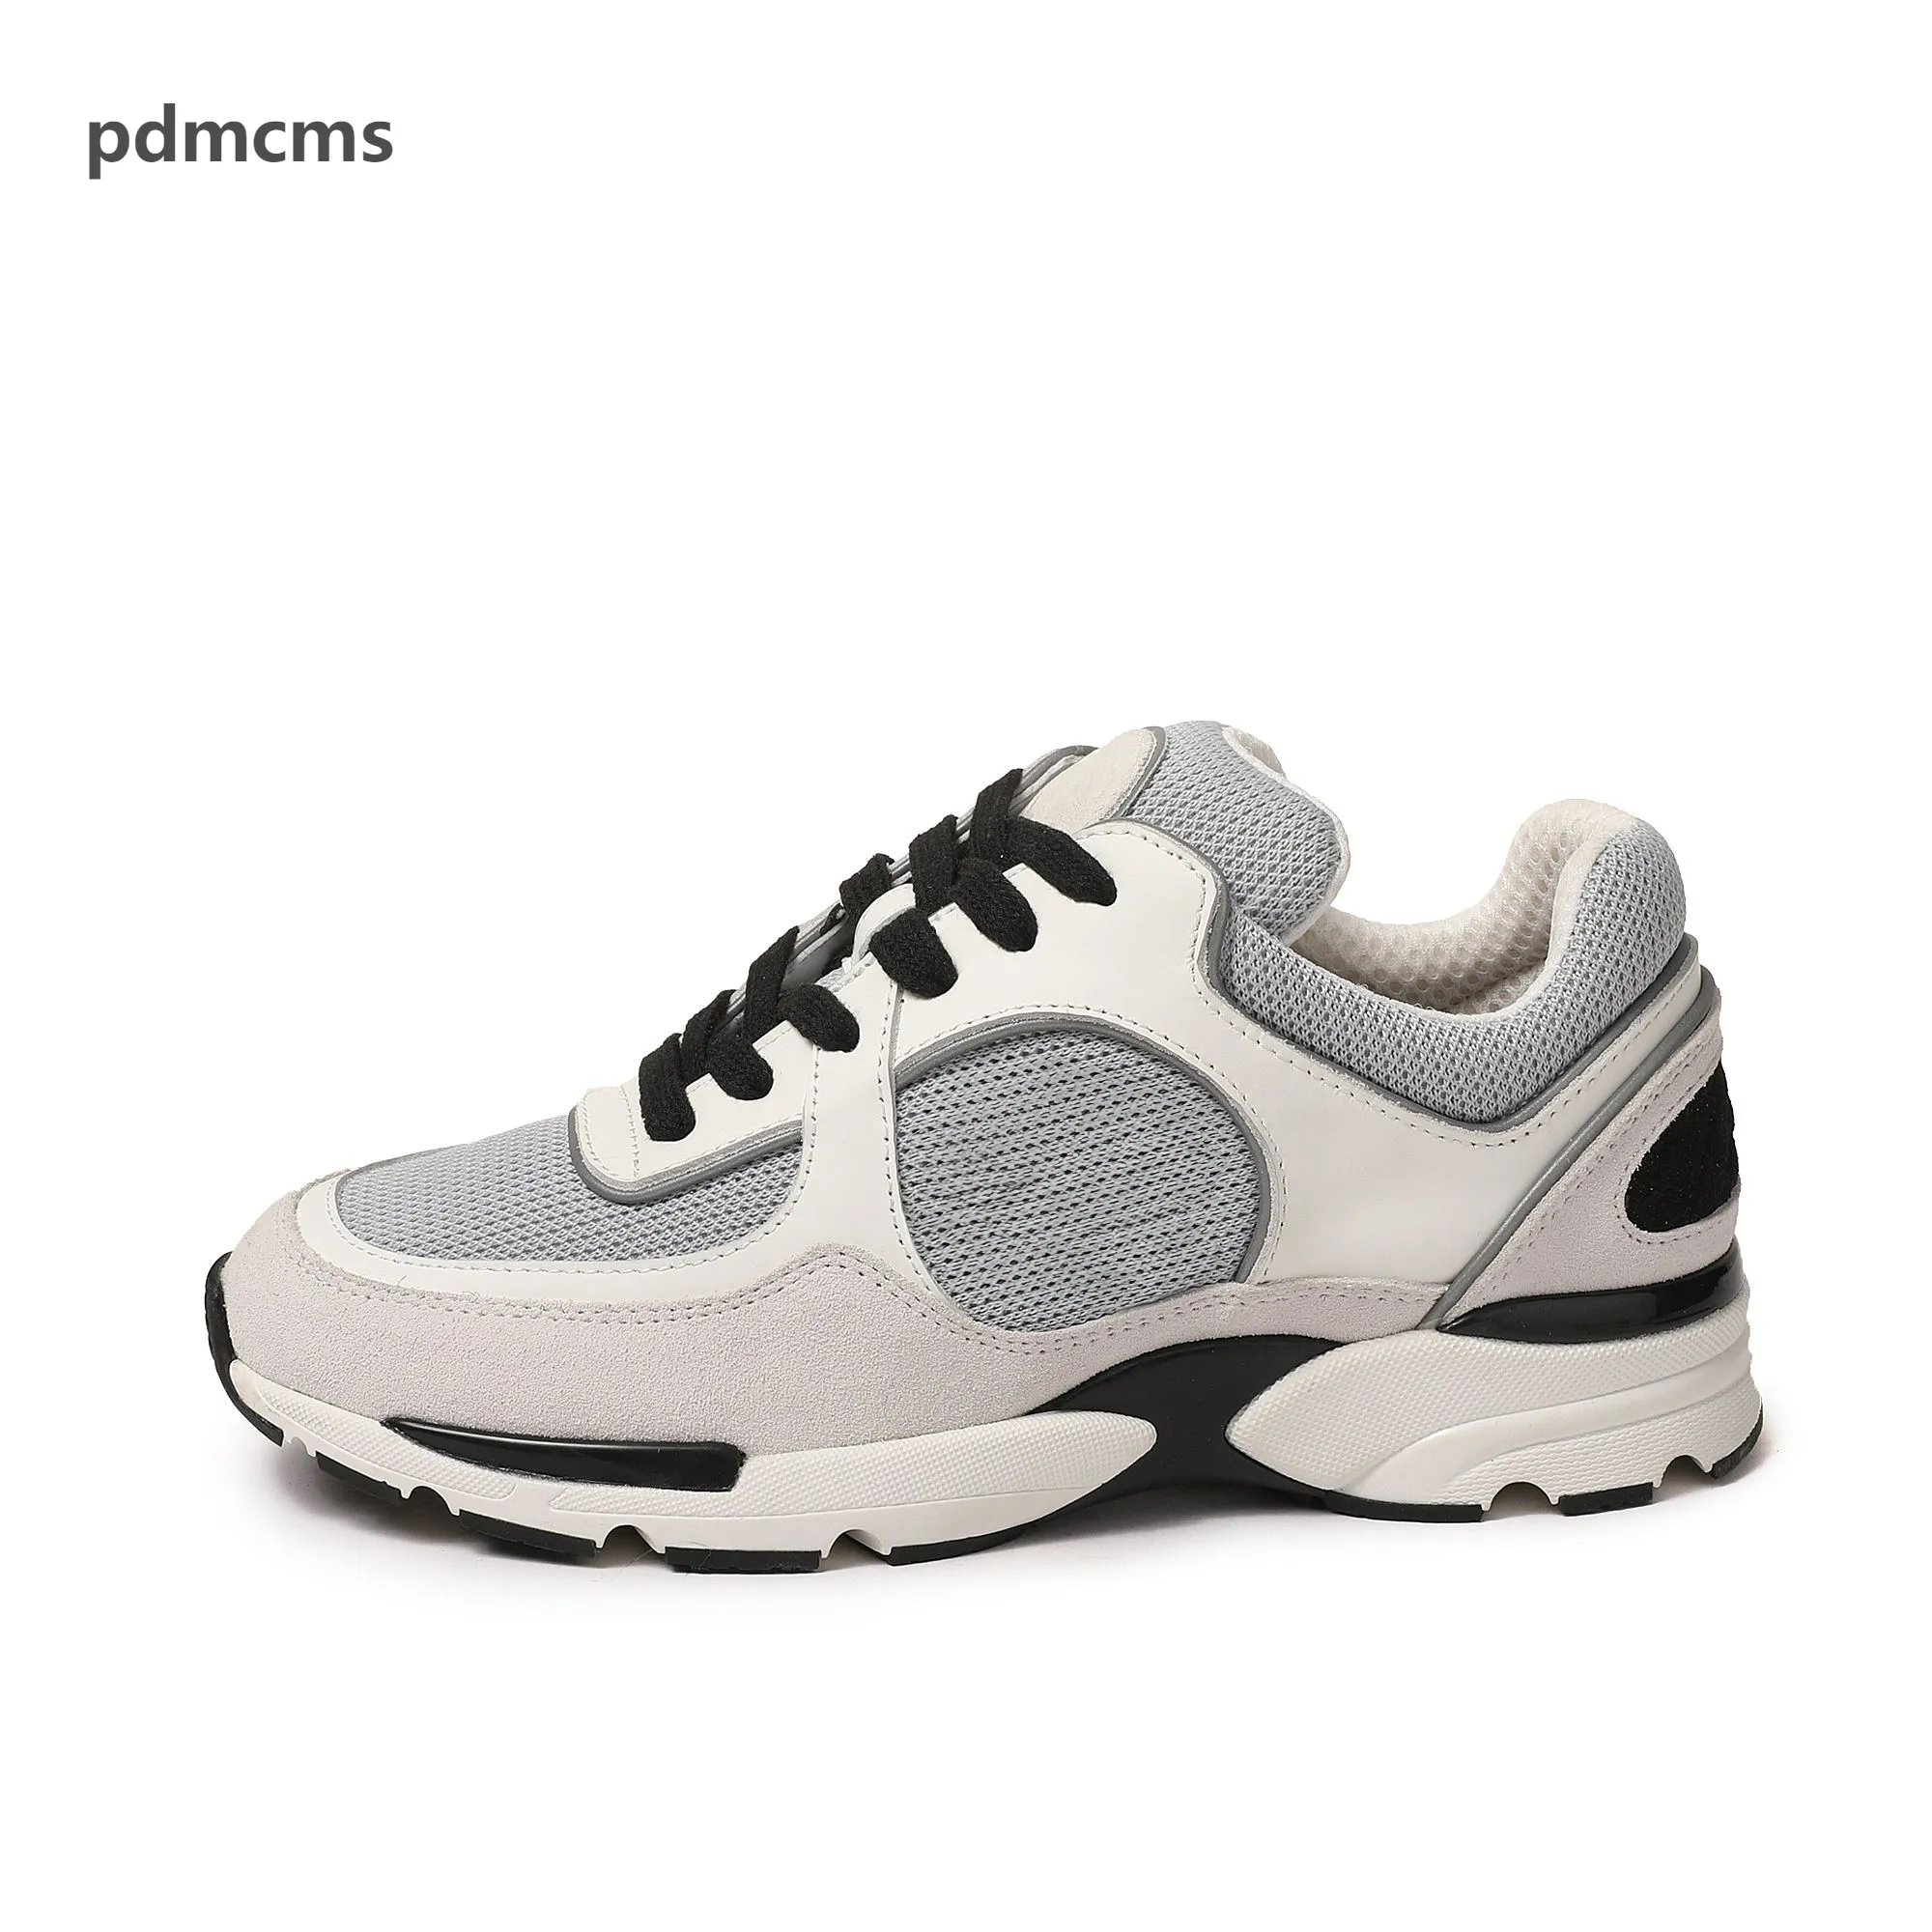 Pdmcms Scarpe sportive casual comode e traspiranti progettate uomini e donne, che consentono ai piedi di godere della libertà e della moda35-45